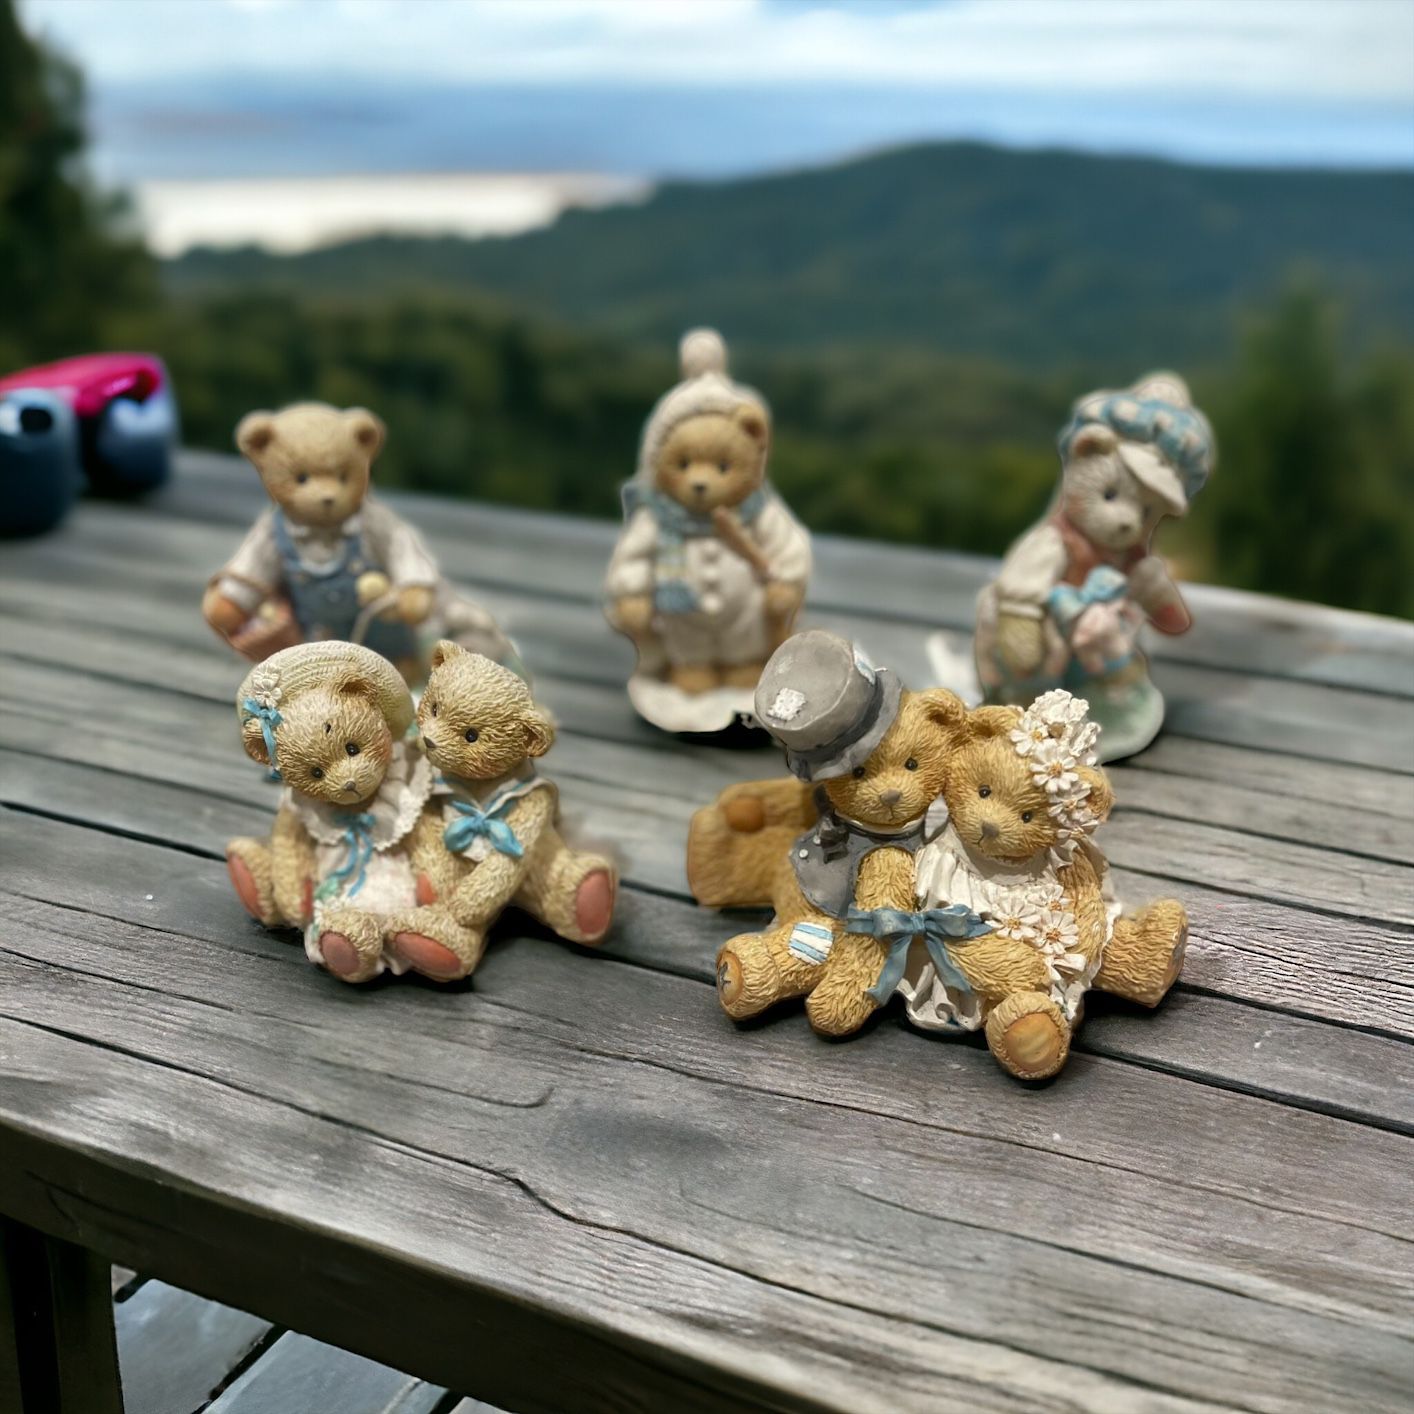 Cherished Teddies - 5 Figurines 